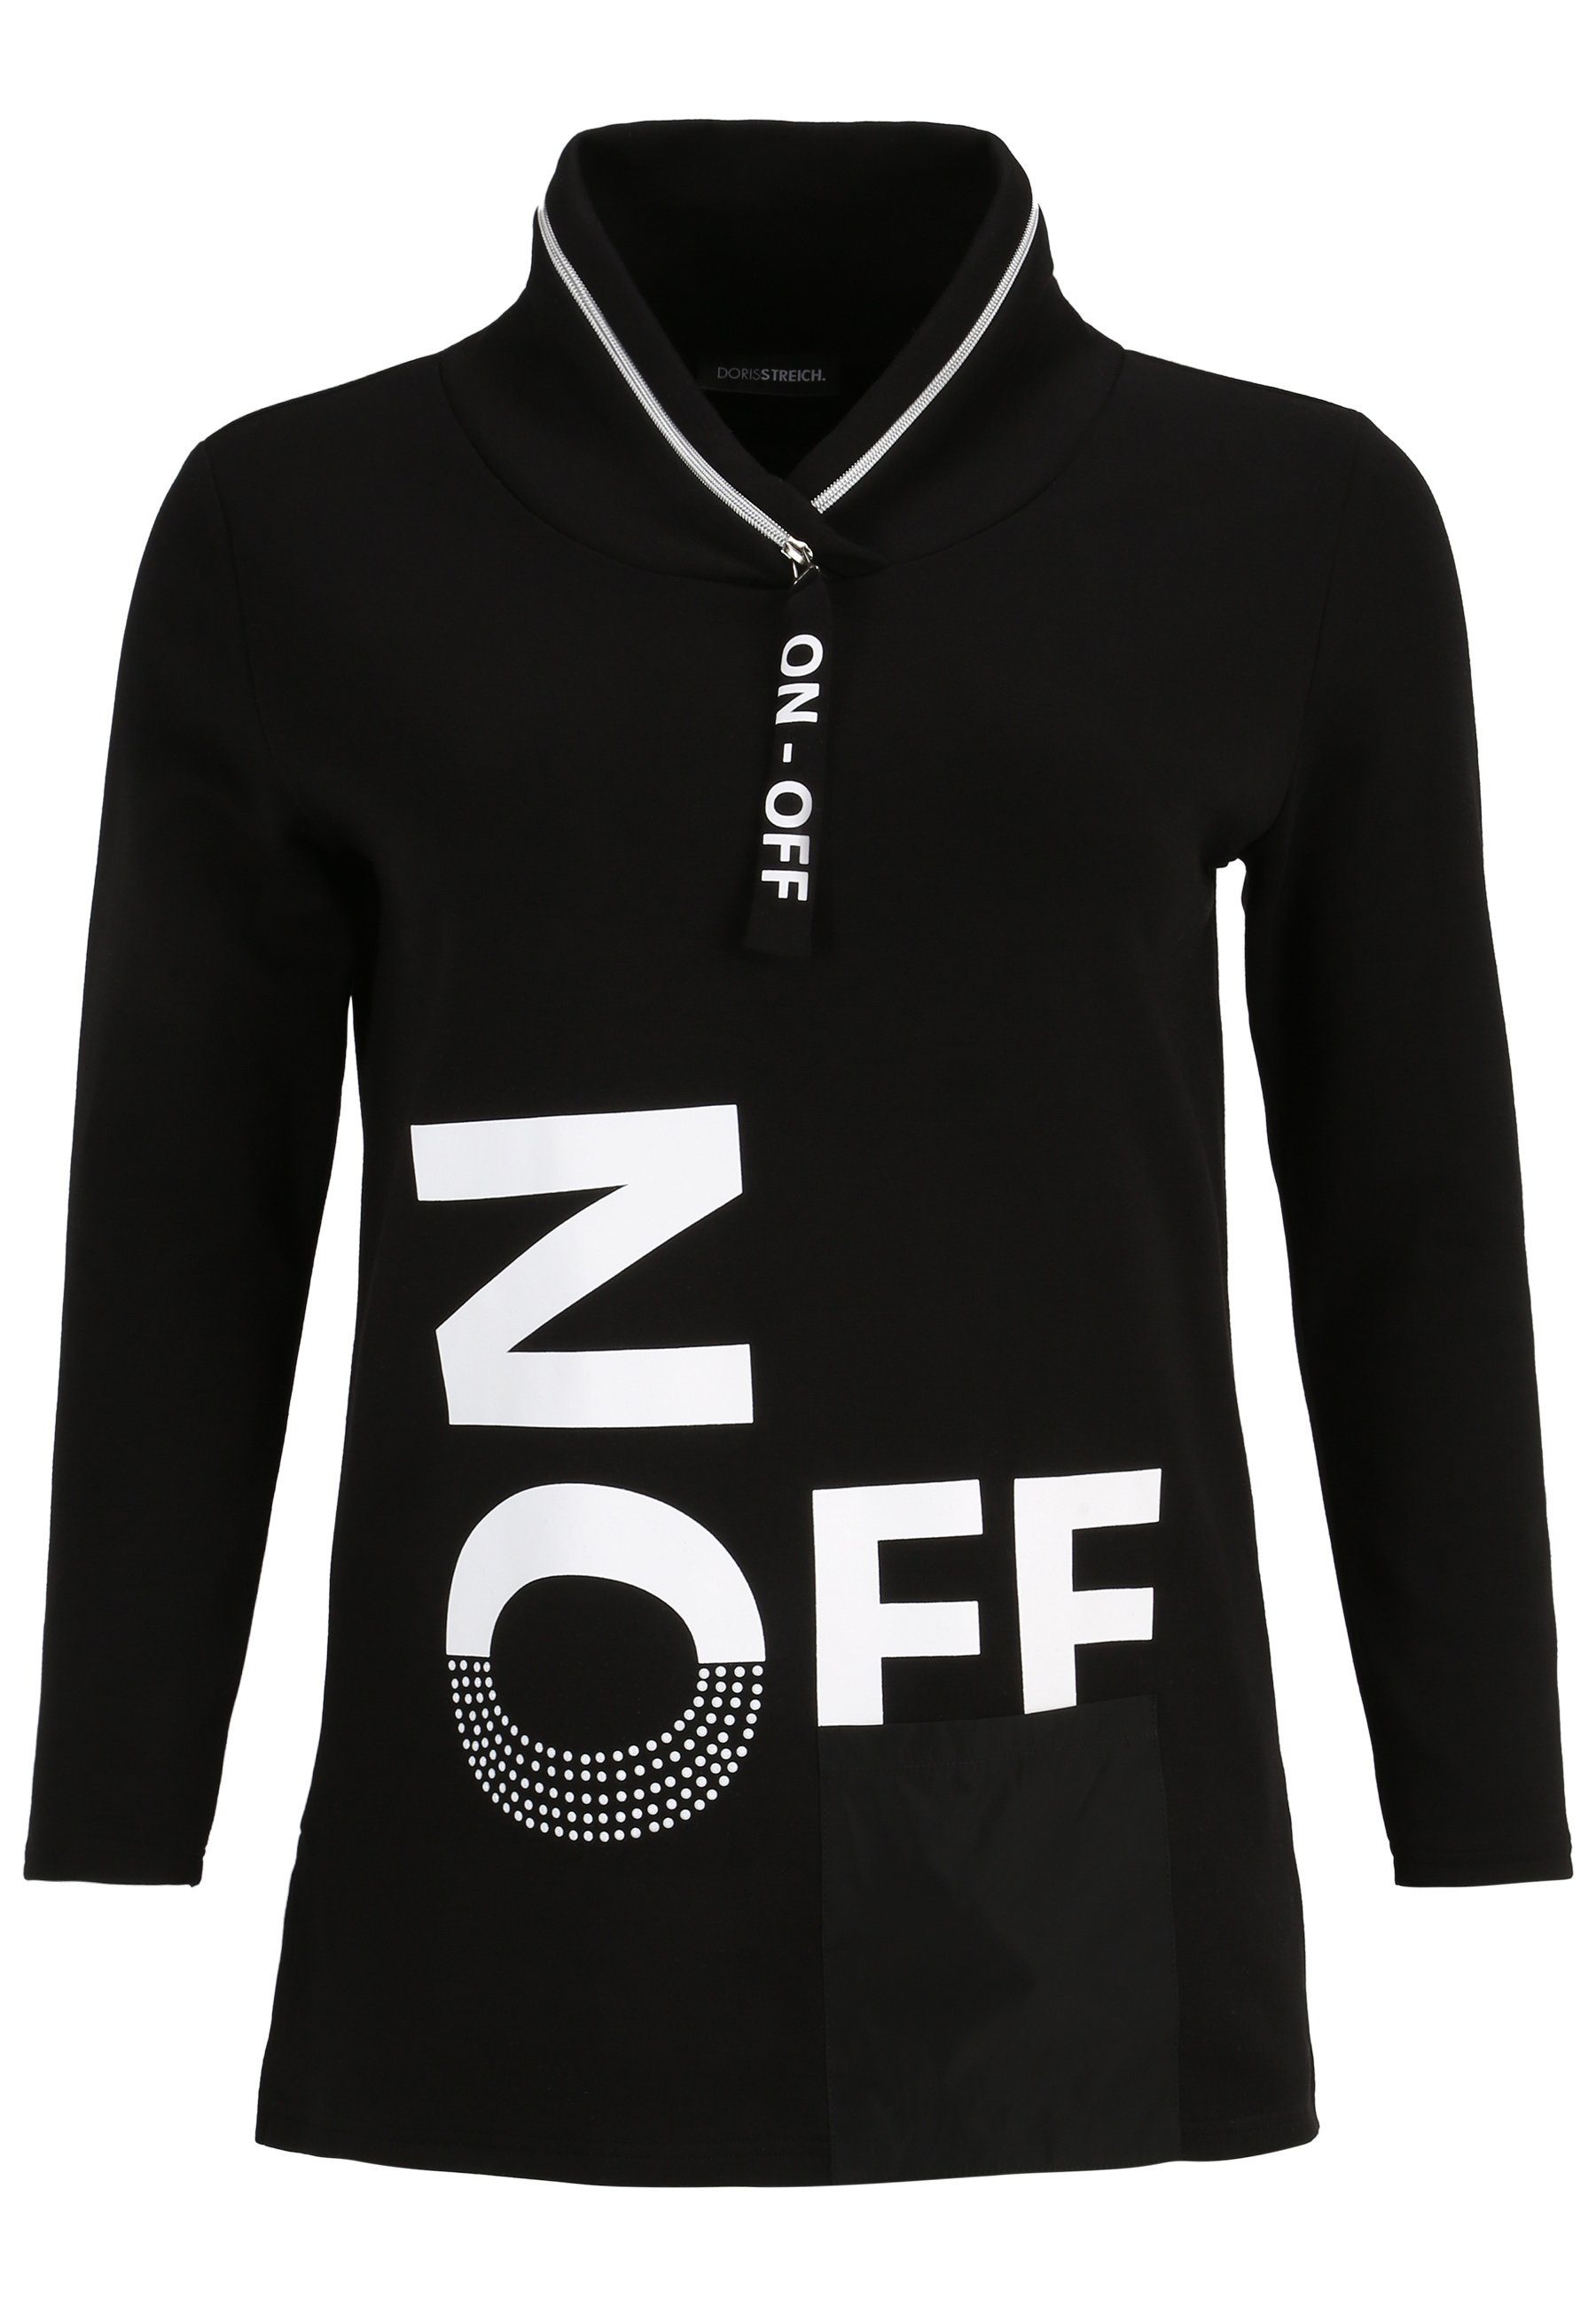 Doris Streich Longshirt Sweatshirt mit Motivprint und Nylon-Tasche mit modernem Design schwarz/weiss